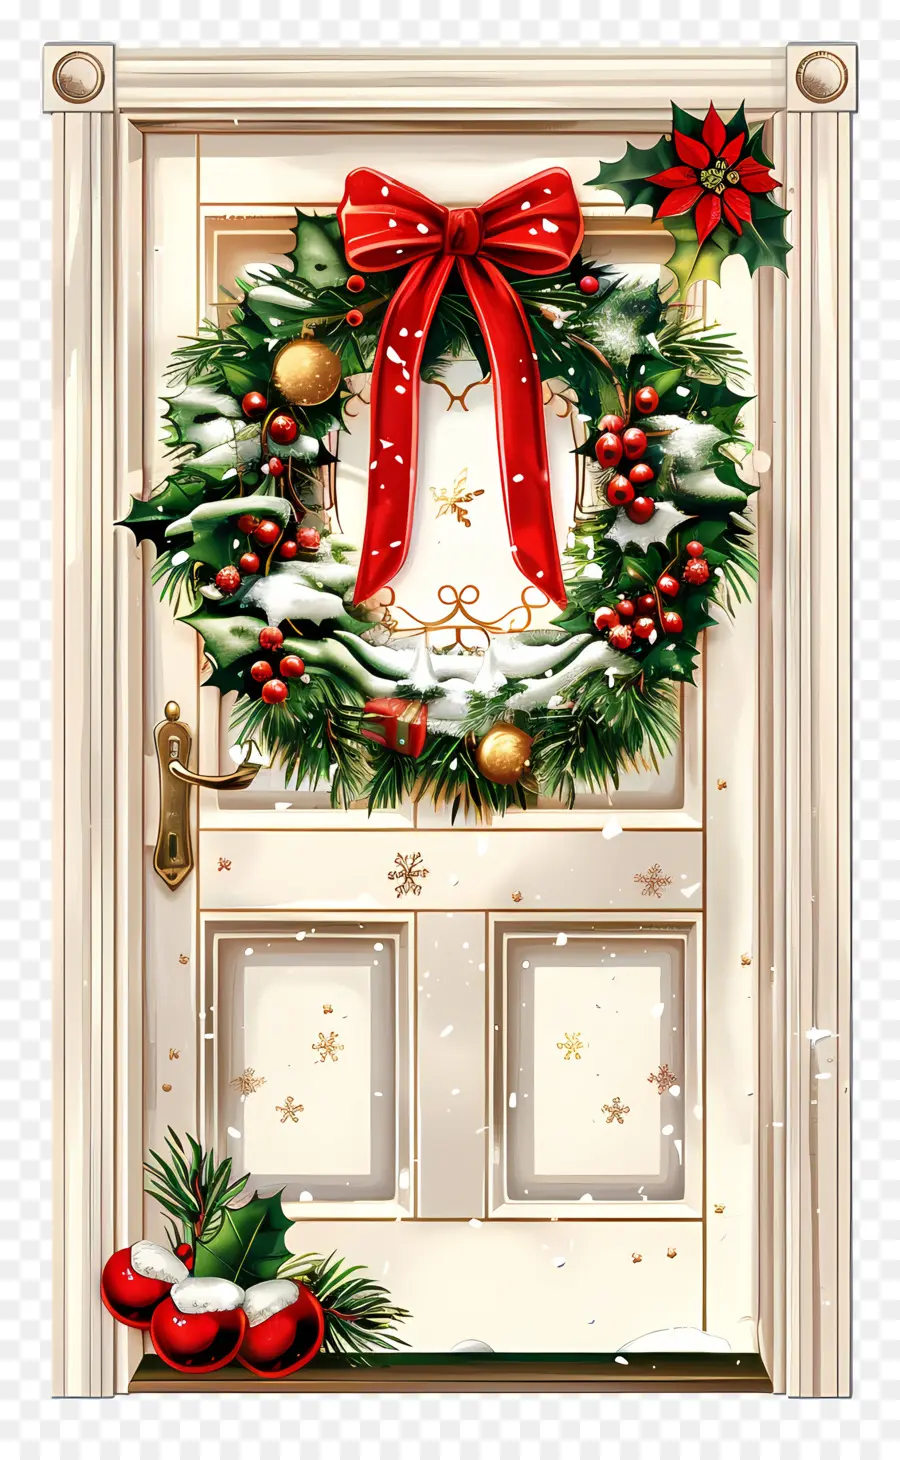 đồ trang trí giáng sinh - Cửa trắng lễ hội với đồ trang trí Giáng sinh, tuyết